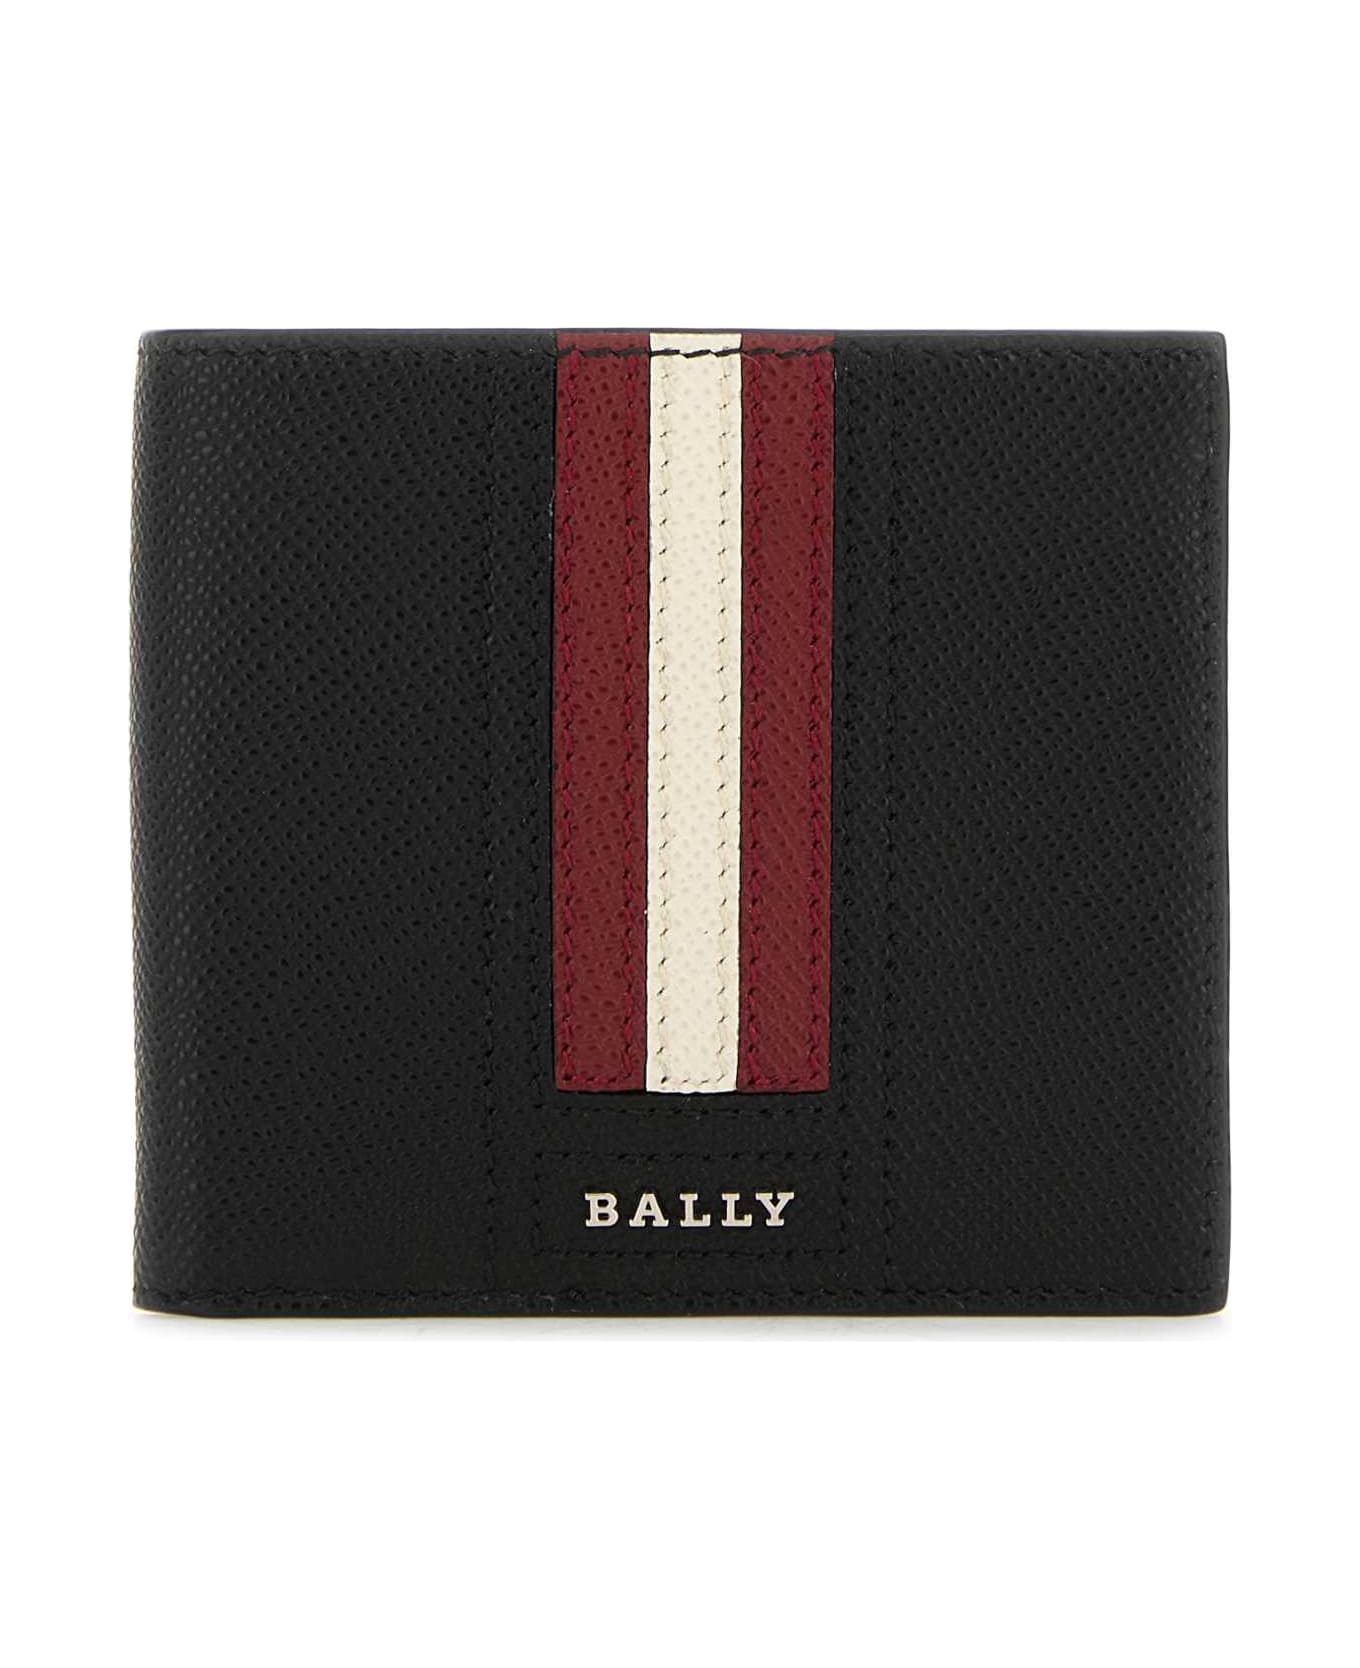 Bally Black Leather Trasai Wallet - Black